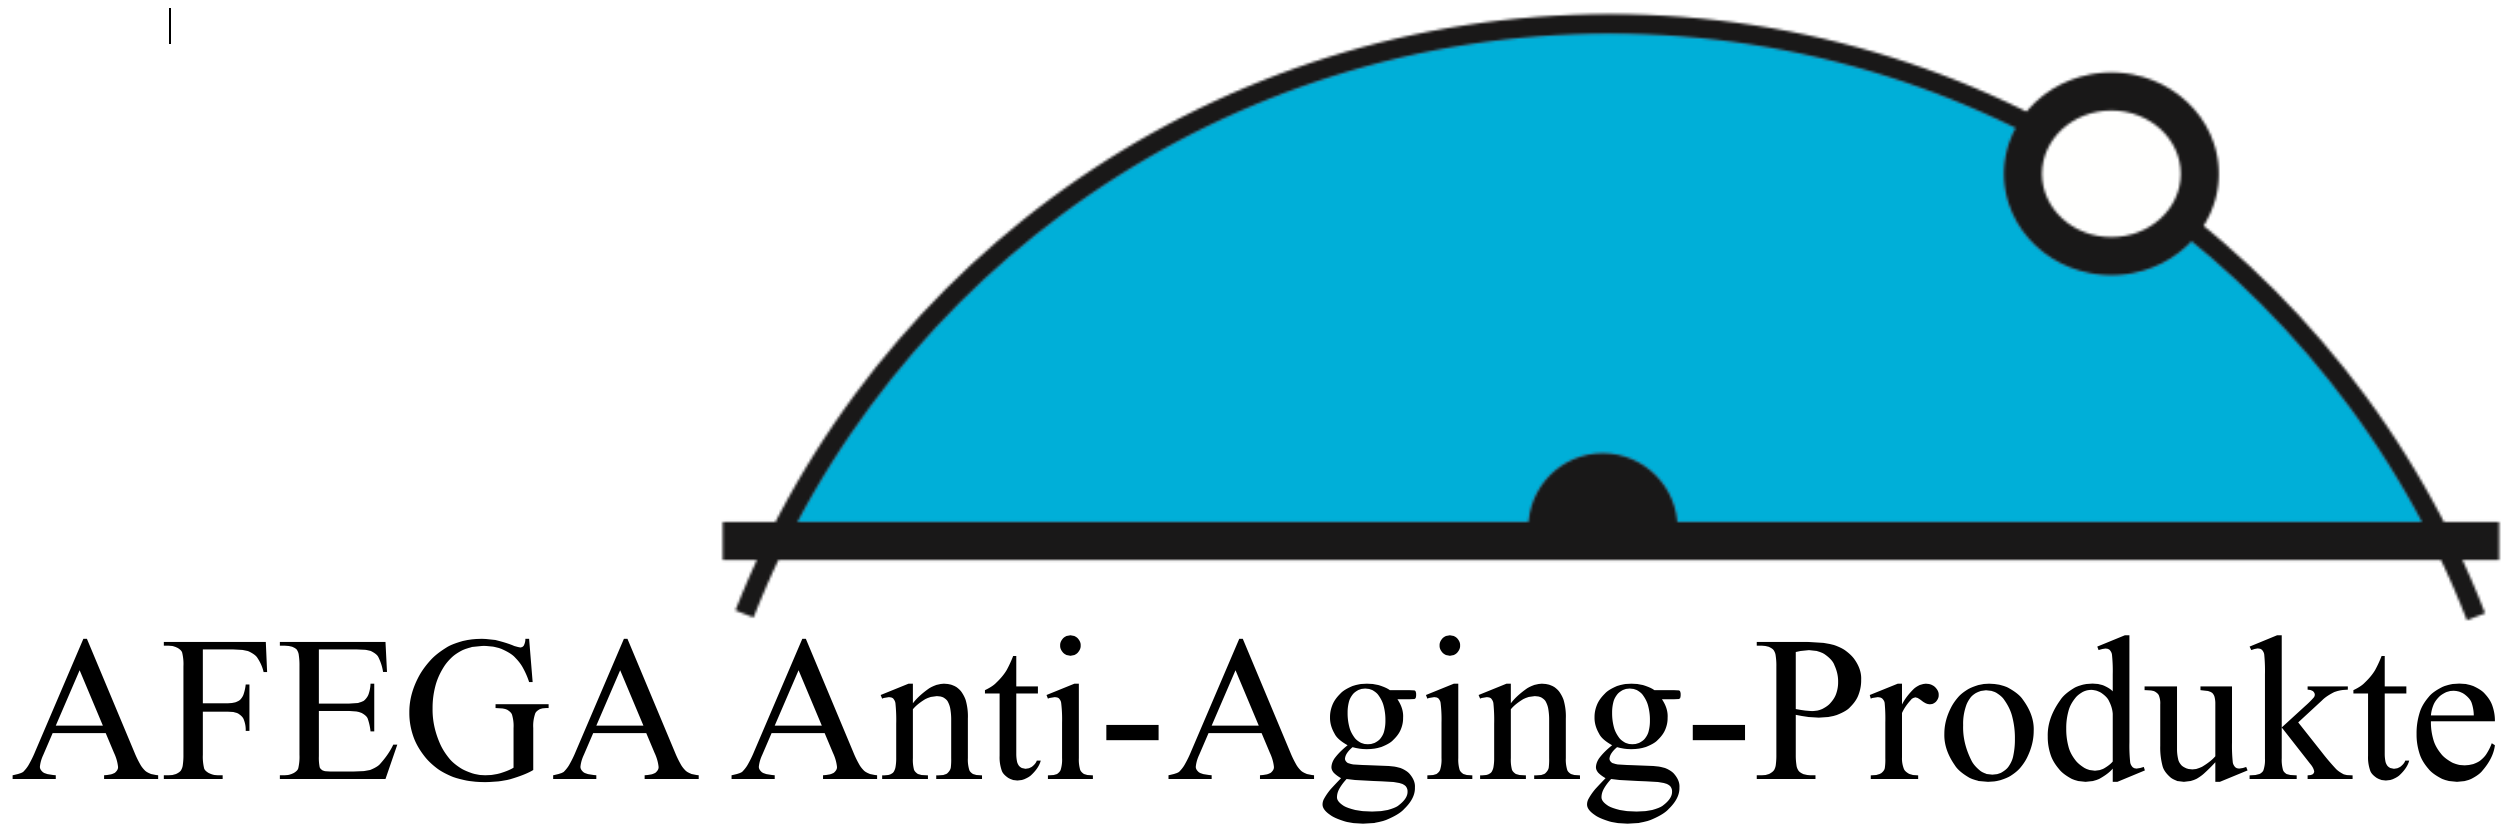 AFEGA Anti-Aging-Produkte